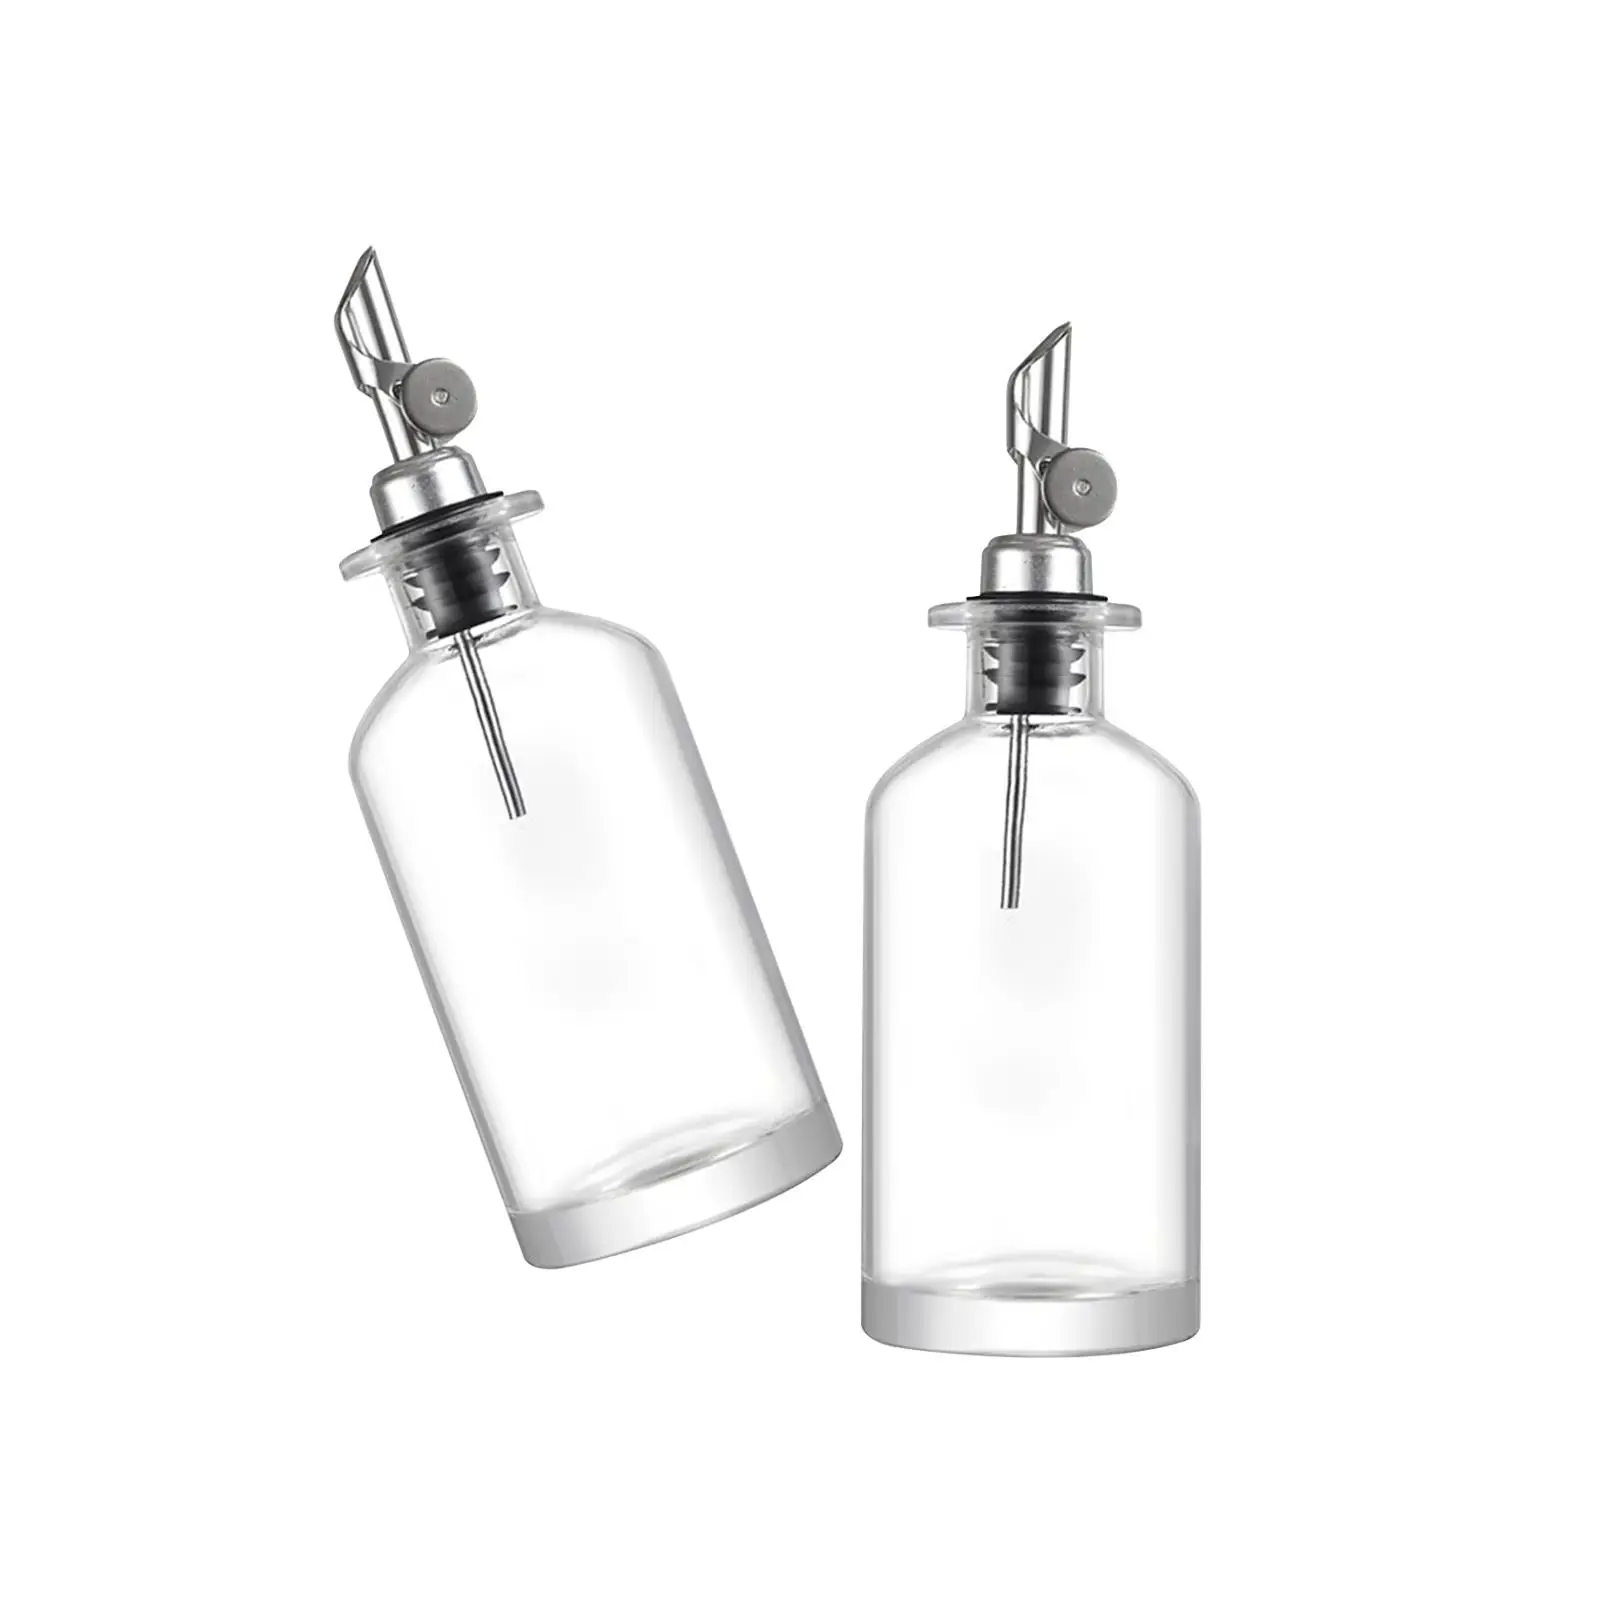 Olive Oil Dispenser Olive Oil Bottles Leakproof Kitchen Accessories Glass Oil